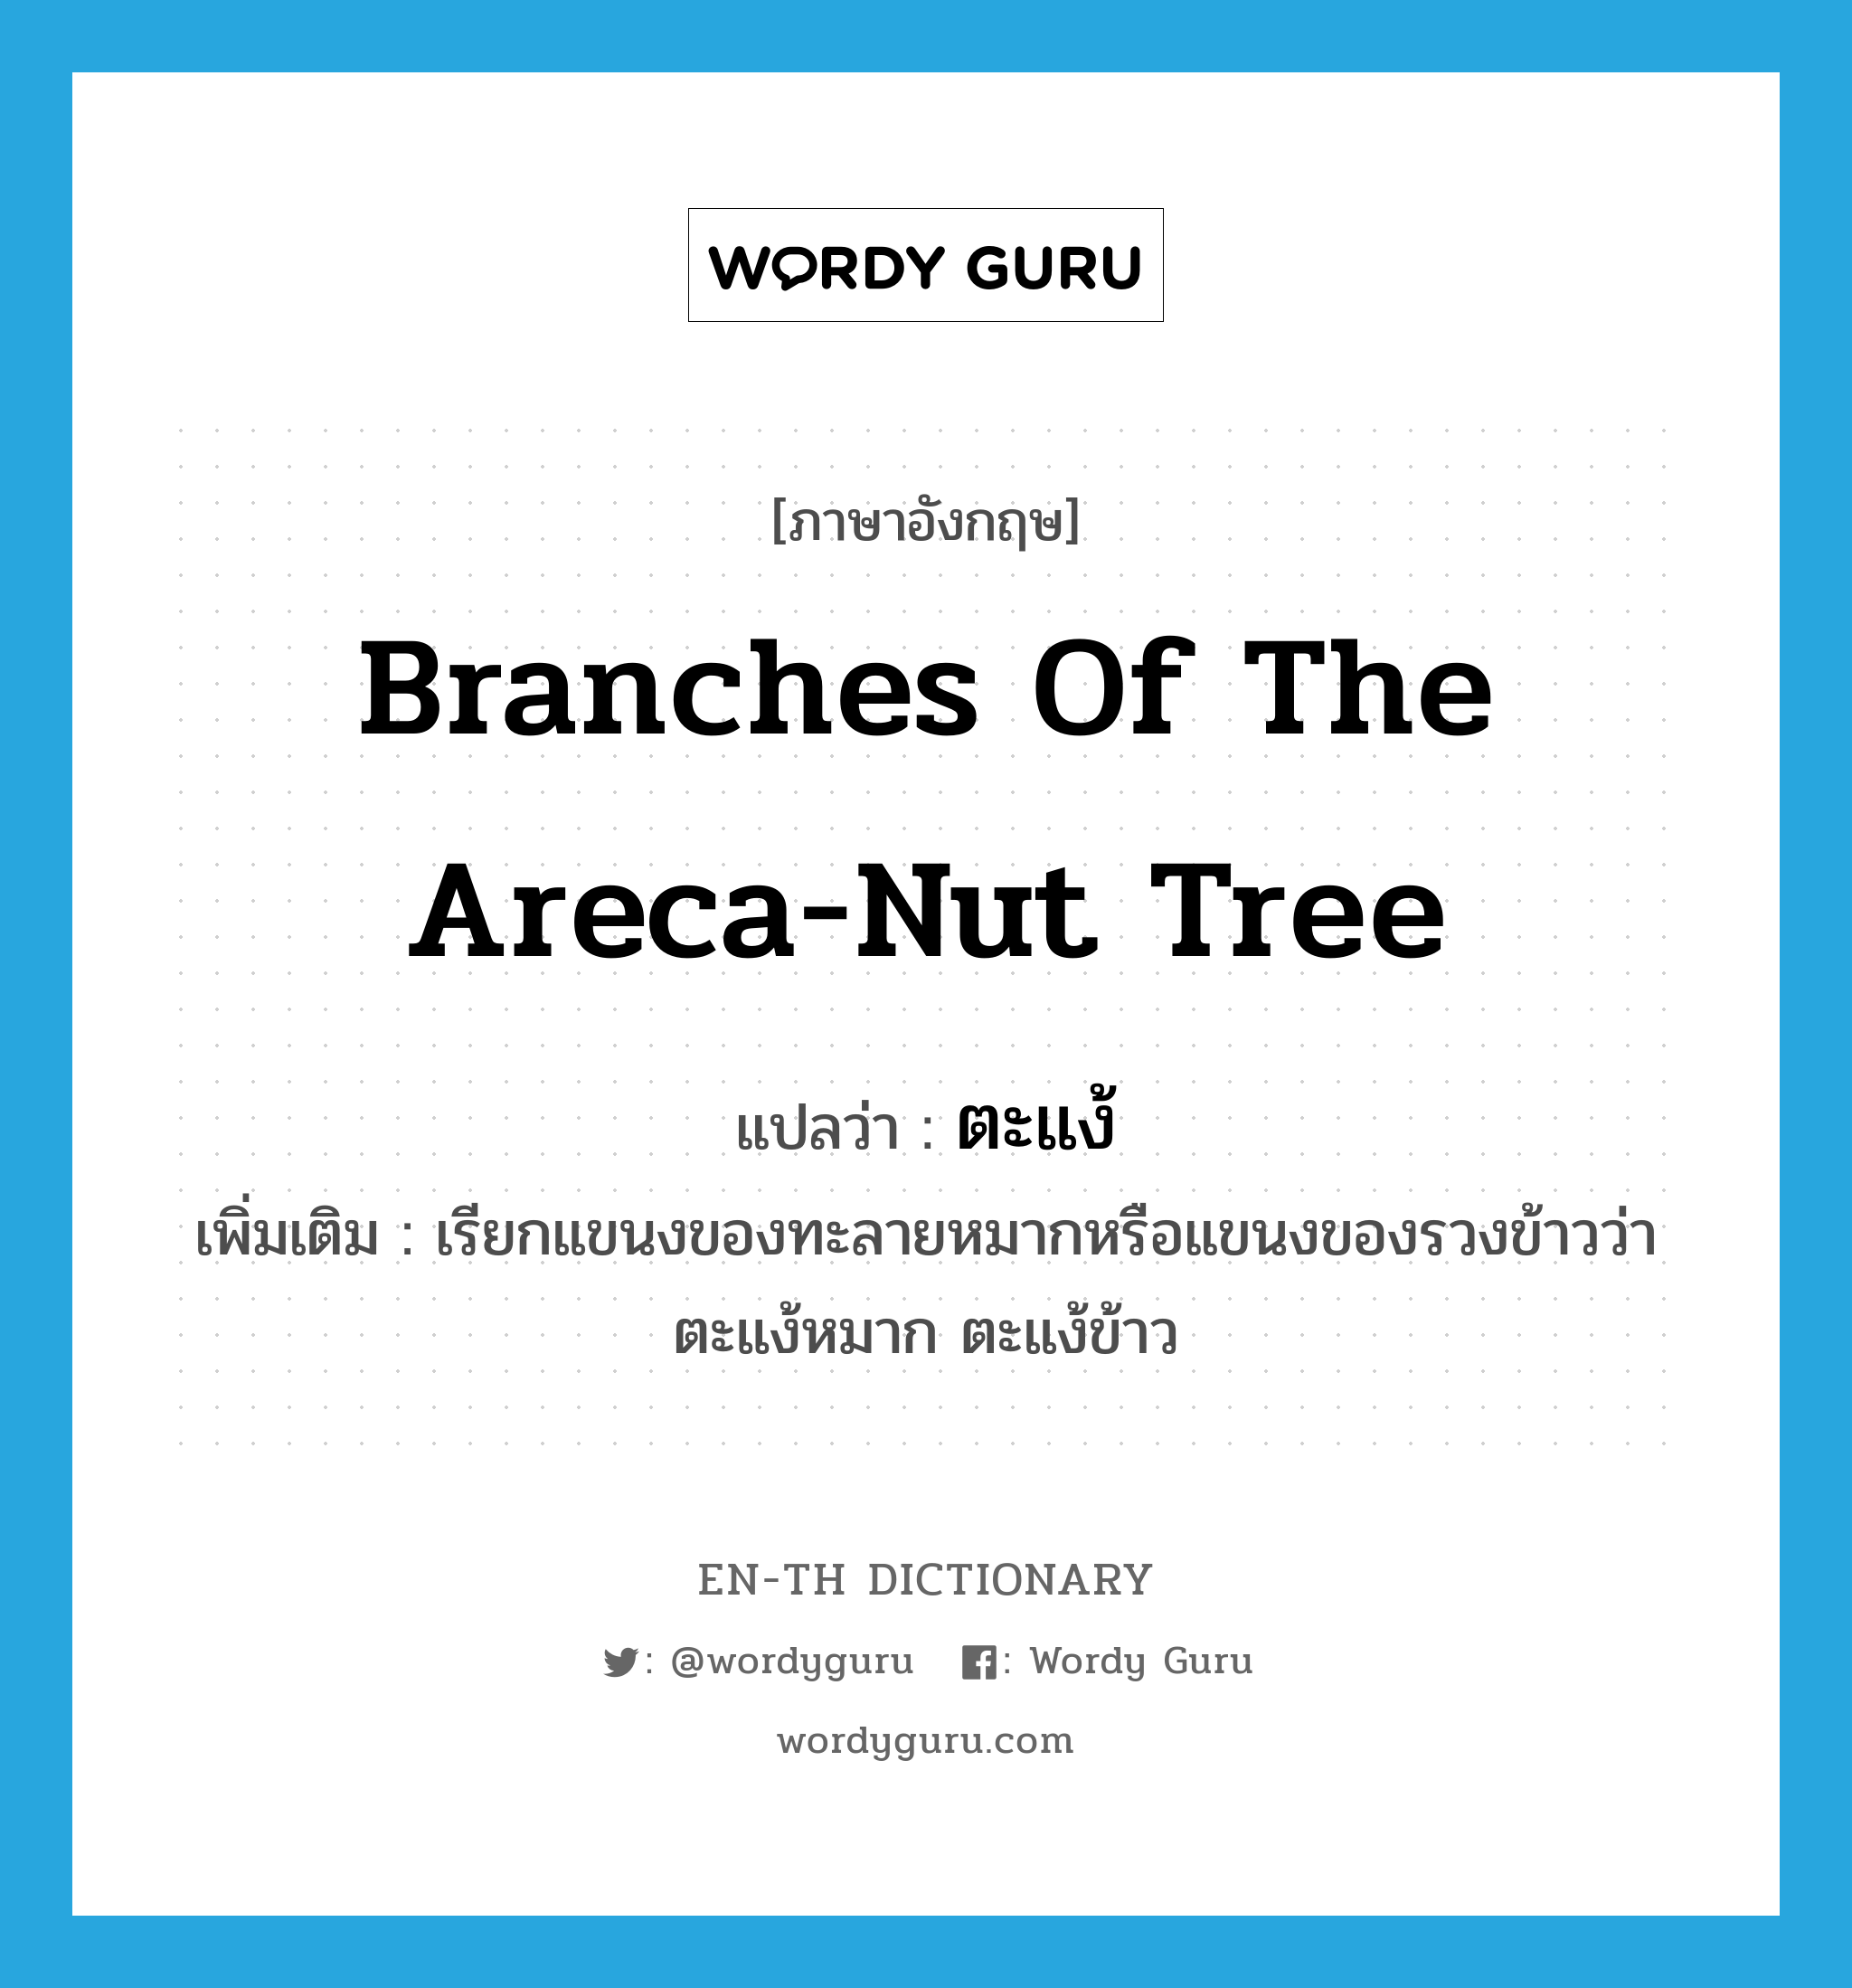 branches of the areca-nut tree แปลว่า?, คำศัพท์ภาษาอังกฤษ branches of the areca-nut tree แปลว่า ตะแง้ ประเภท N เพิ่มเติม เรียกแขนงของทะลายหมากหรือแขนงของรวงข้าวว่า ตะแง้หมาก ตะแง้ข้าว หมวด N